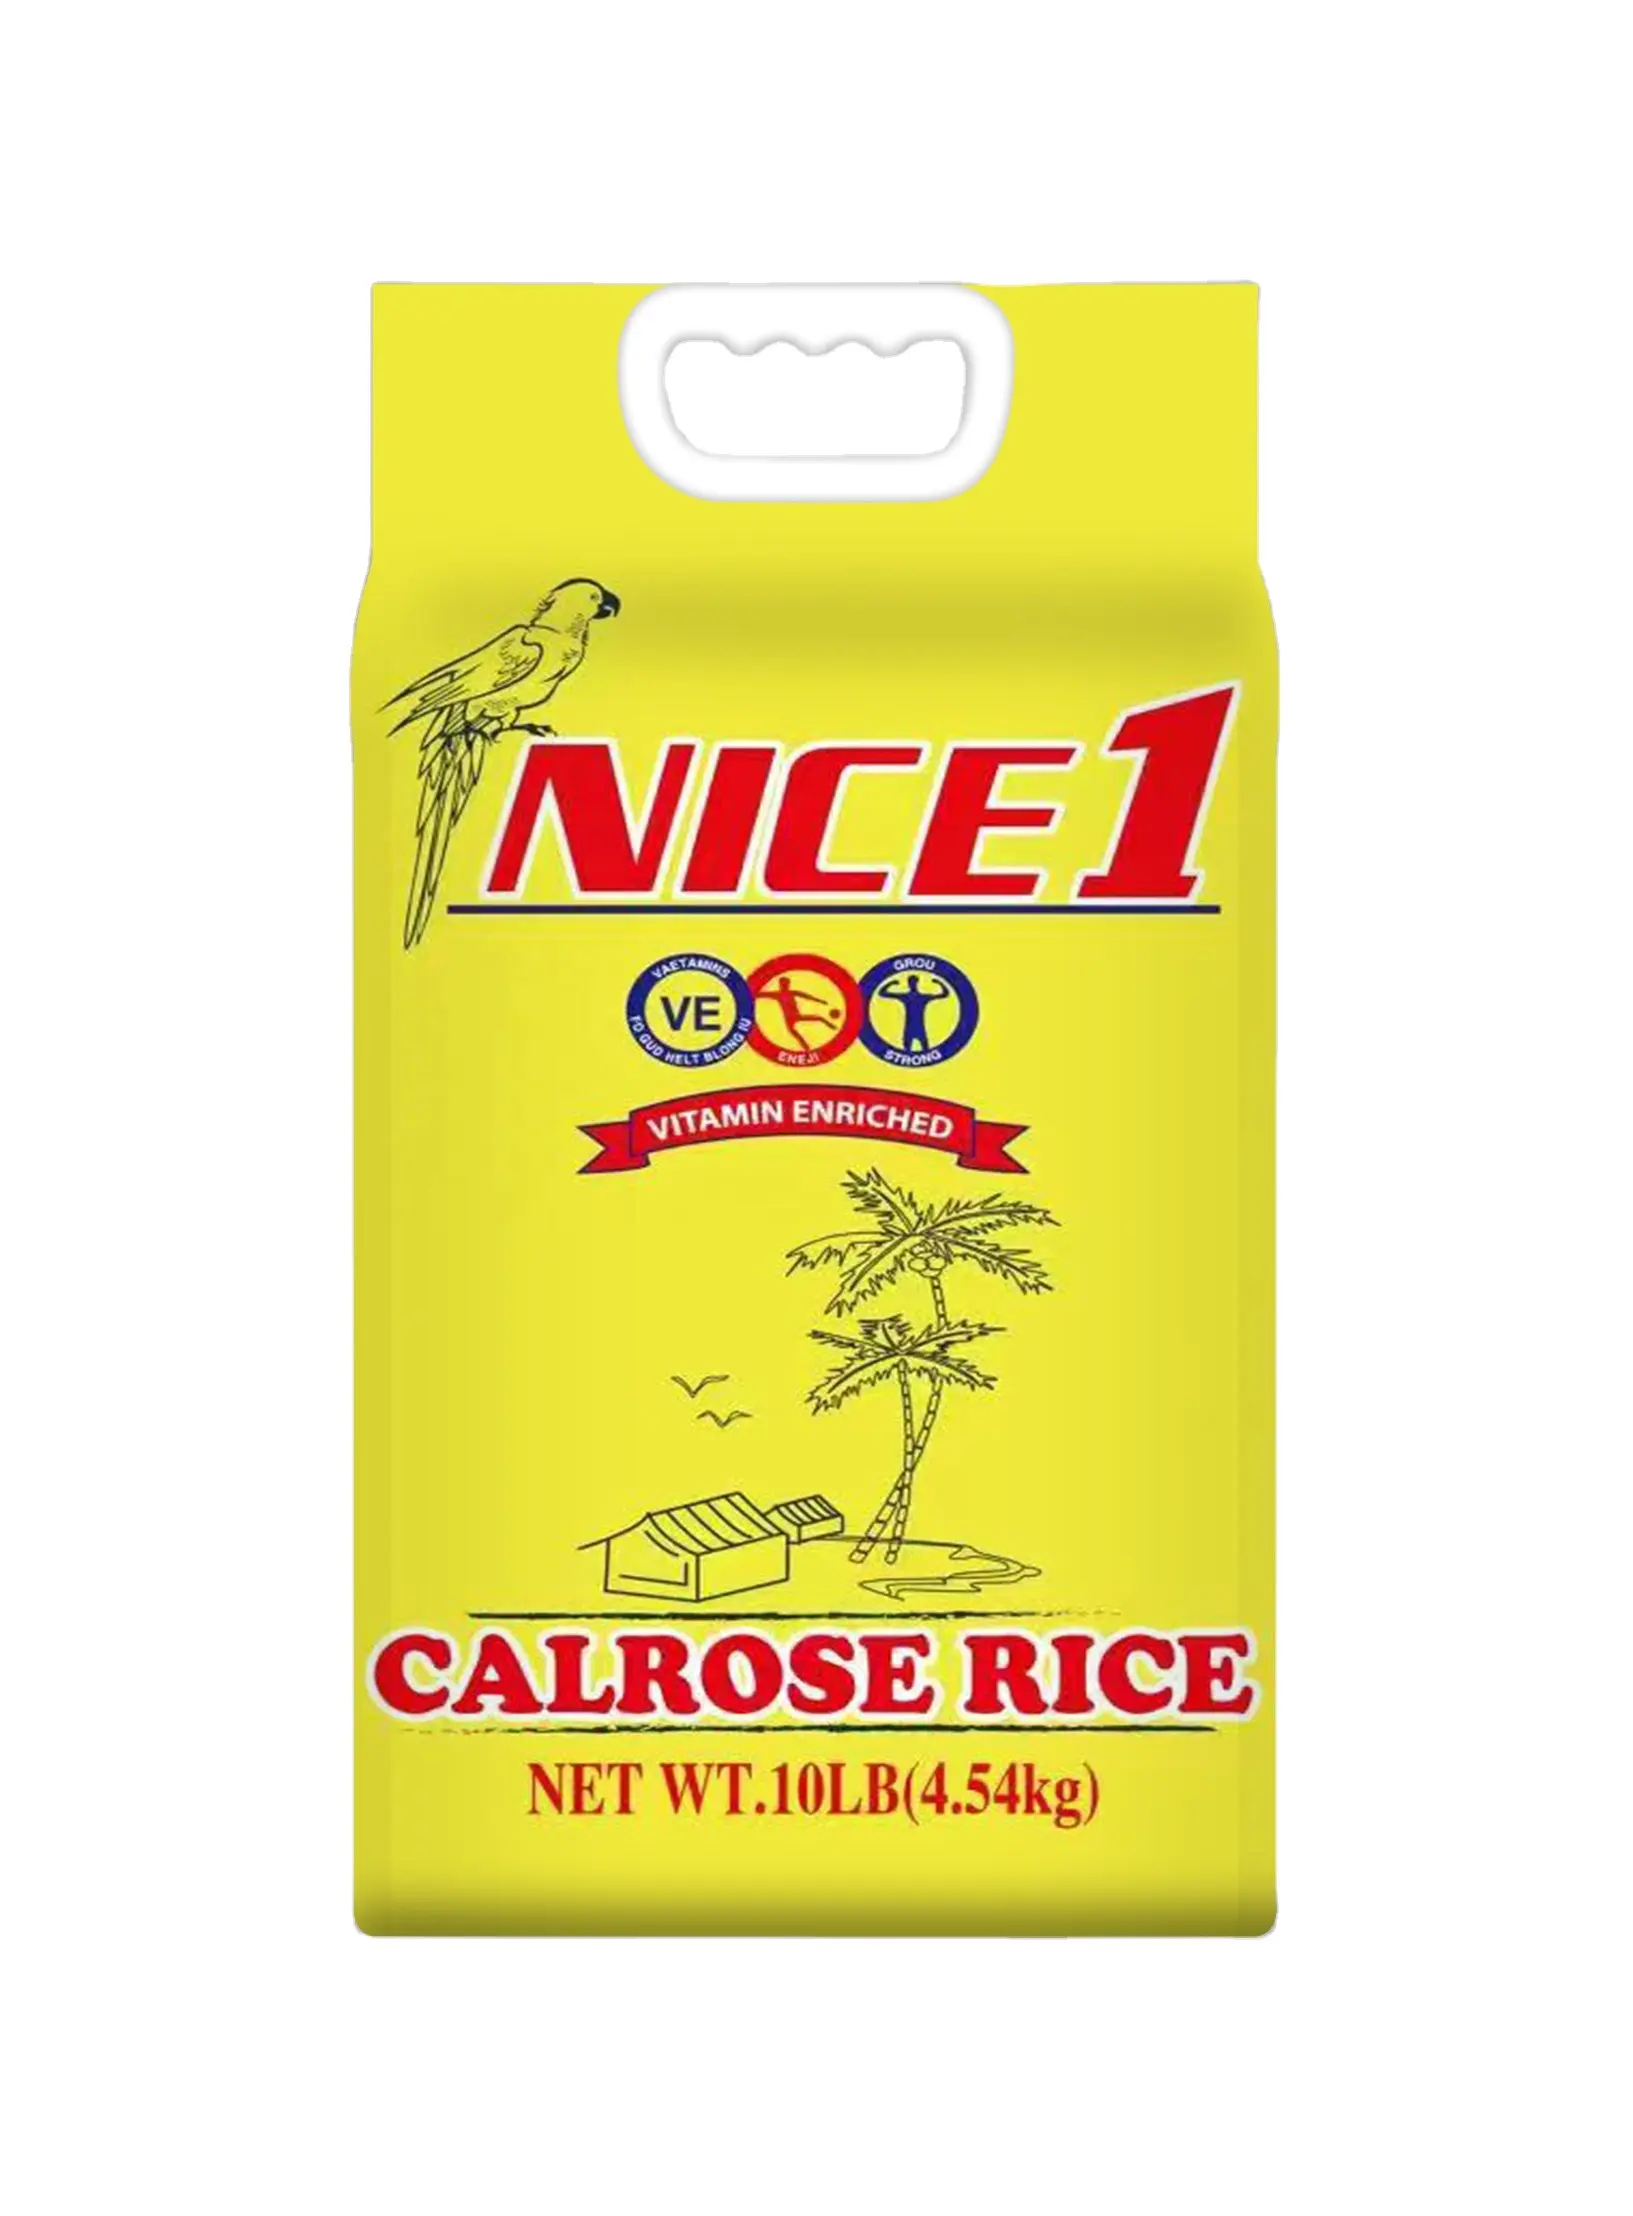 Bolsa de arroz tejida PP de diseño personalizado con impresión en huecograbado para uso agrícola y almacenamiento al vacío, bolsa de embalaje de arroz, bolsas de plástico